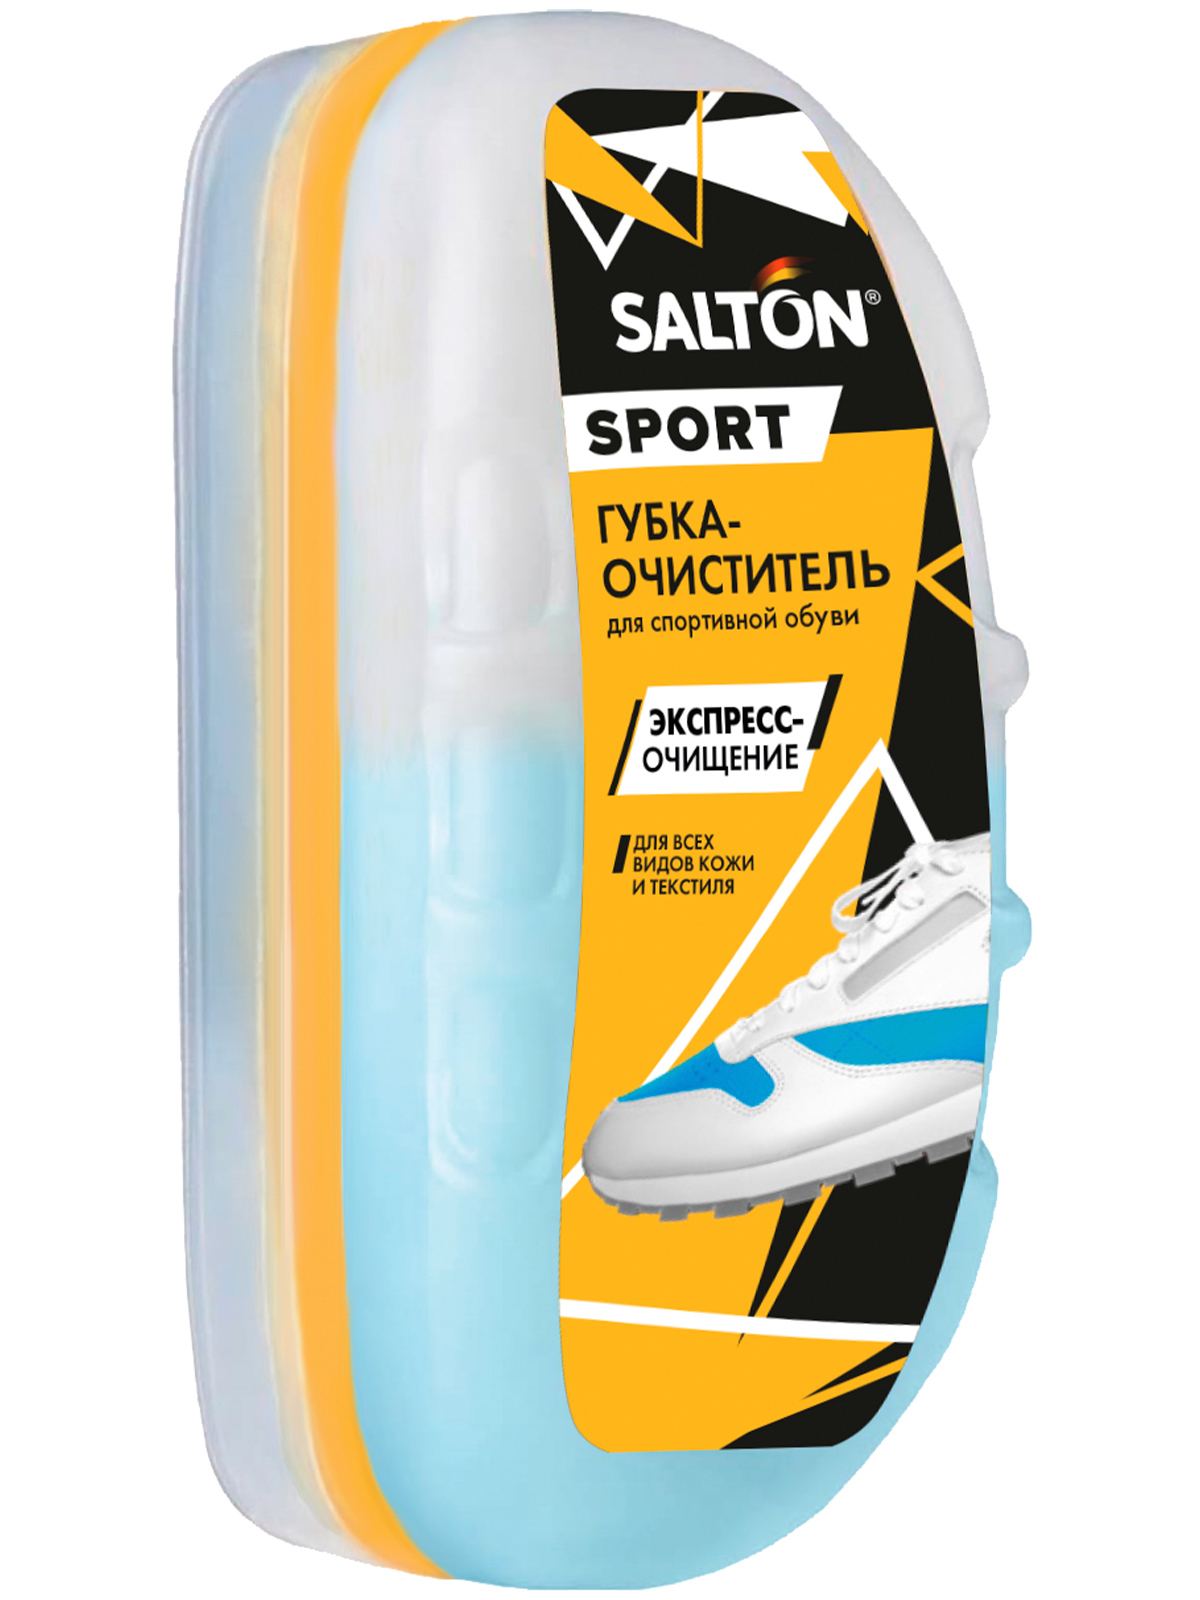 Губка-очиститель для спортивной обуви SALTON SPORT 75 мл по цене 360 .